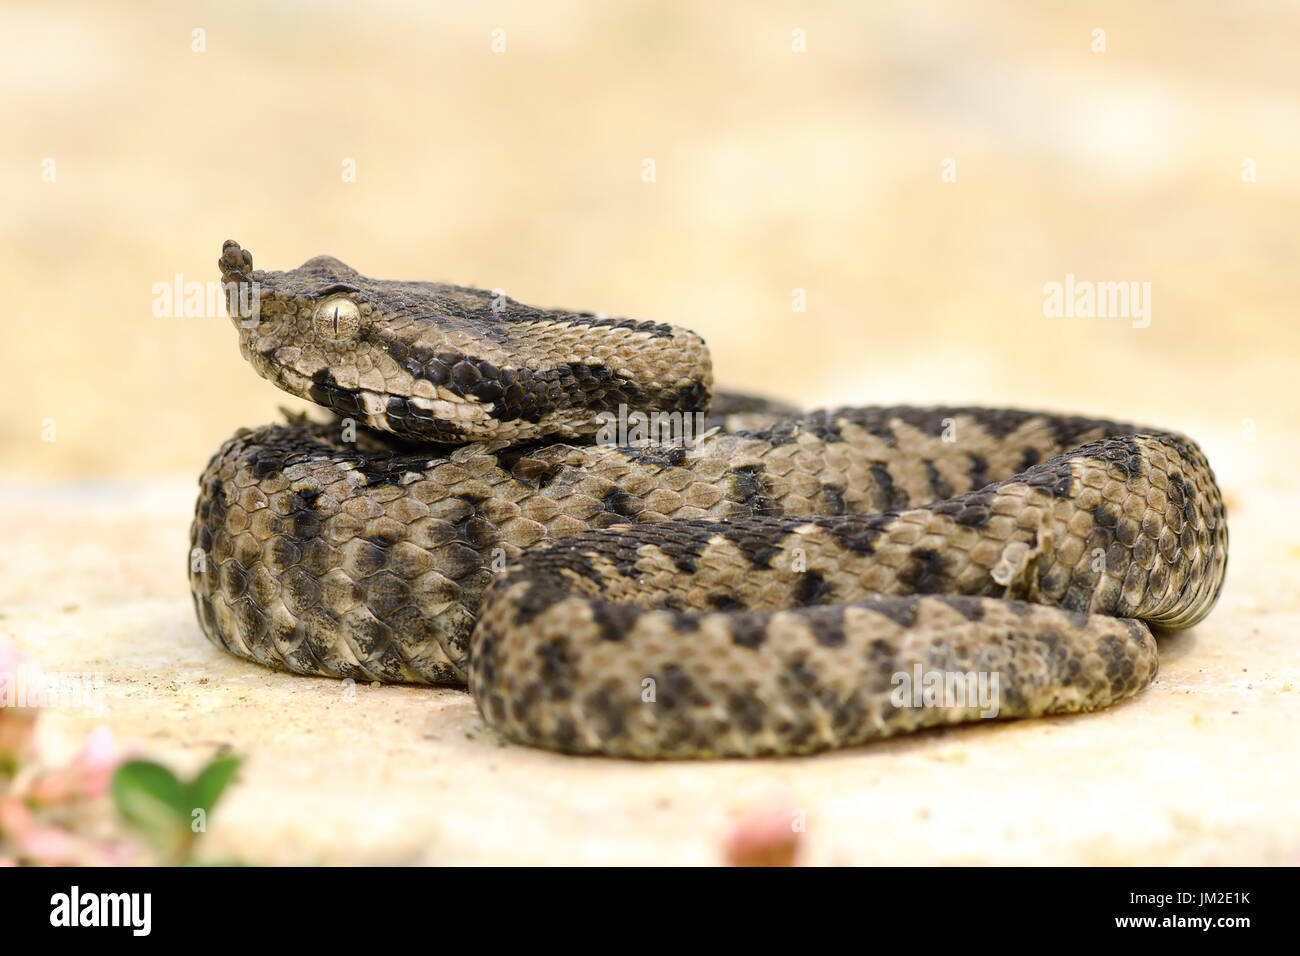 Juvenile Sand-Viper, ruht auf einem Felsen; diese gefährlichen europäischen Schlangen sind auf sonnigen Standorten in felsigen Gebieten (Vipera Ammodytes) Aalen. Stockfoto